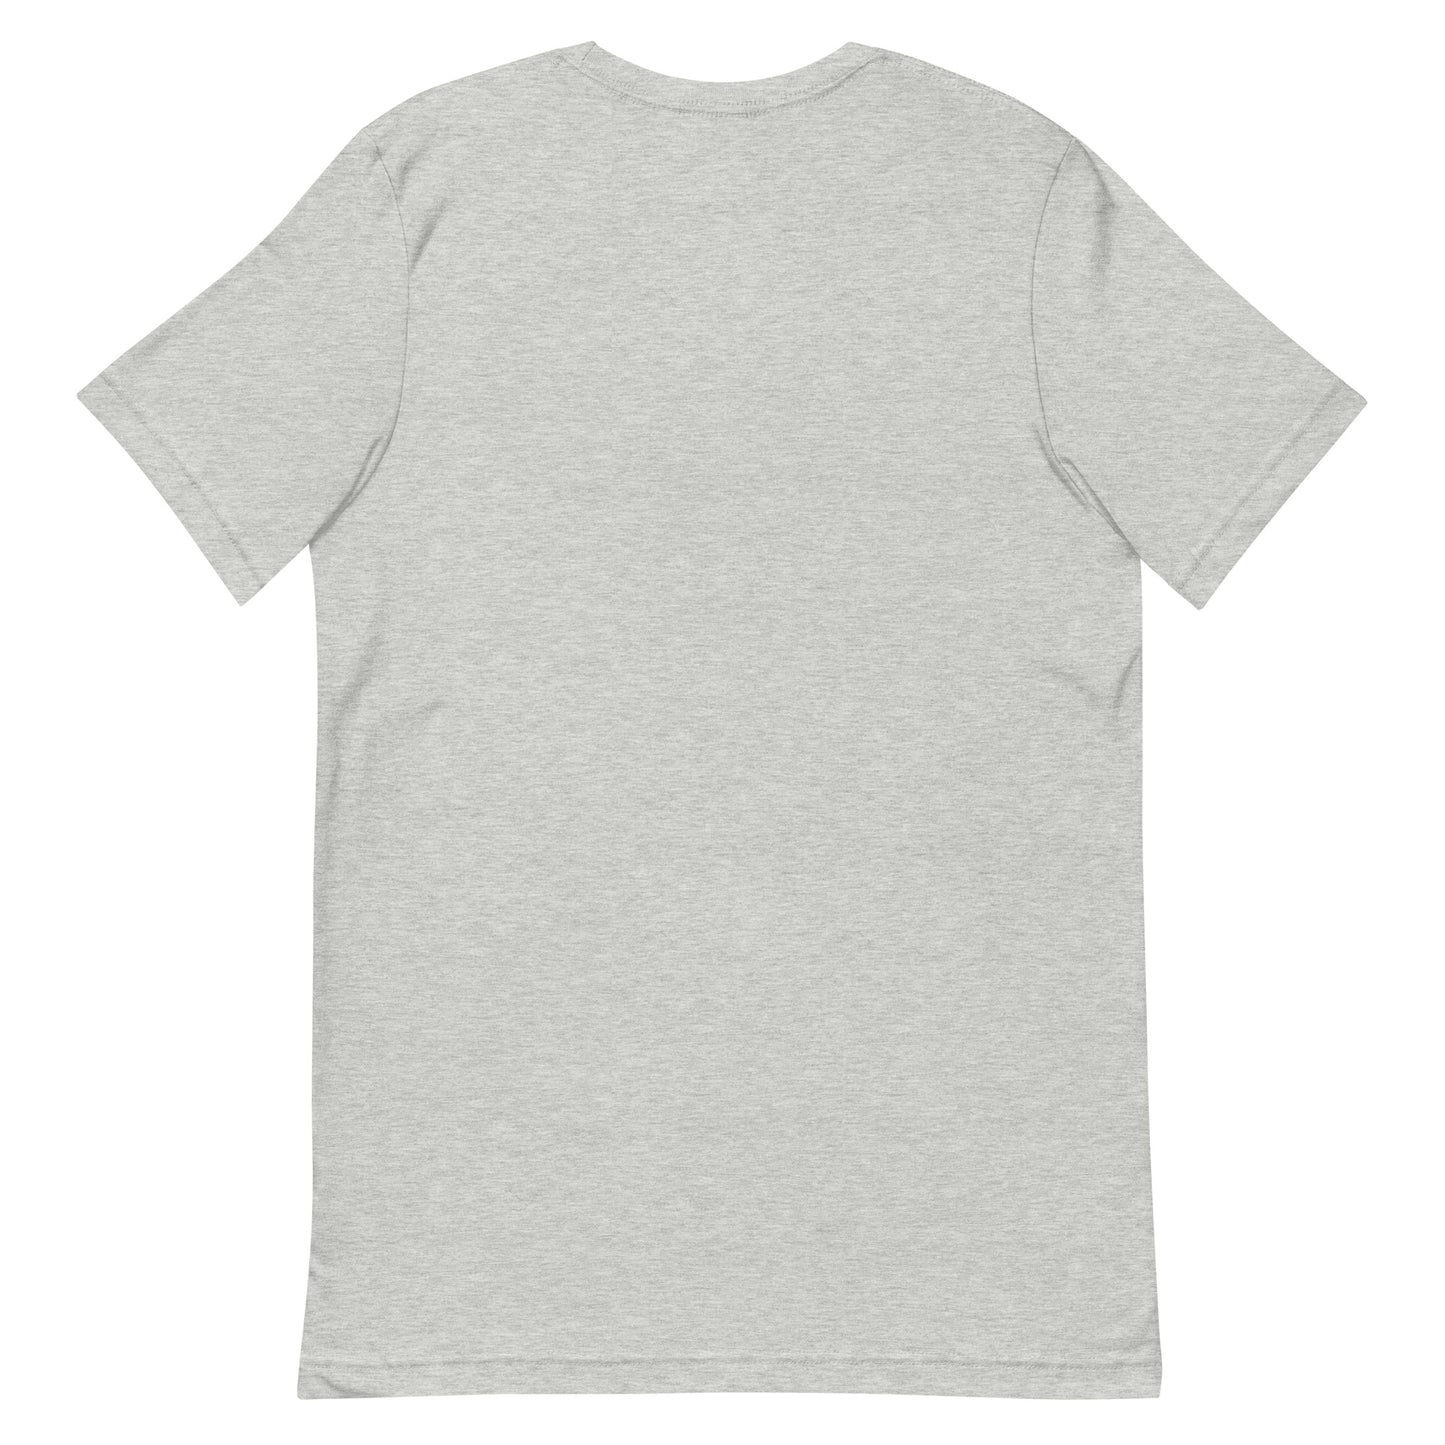 1.0 AF 2.0 T Shirt